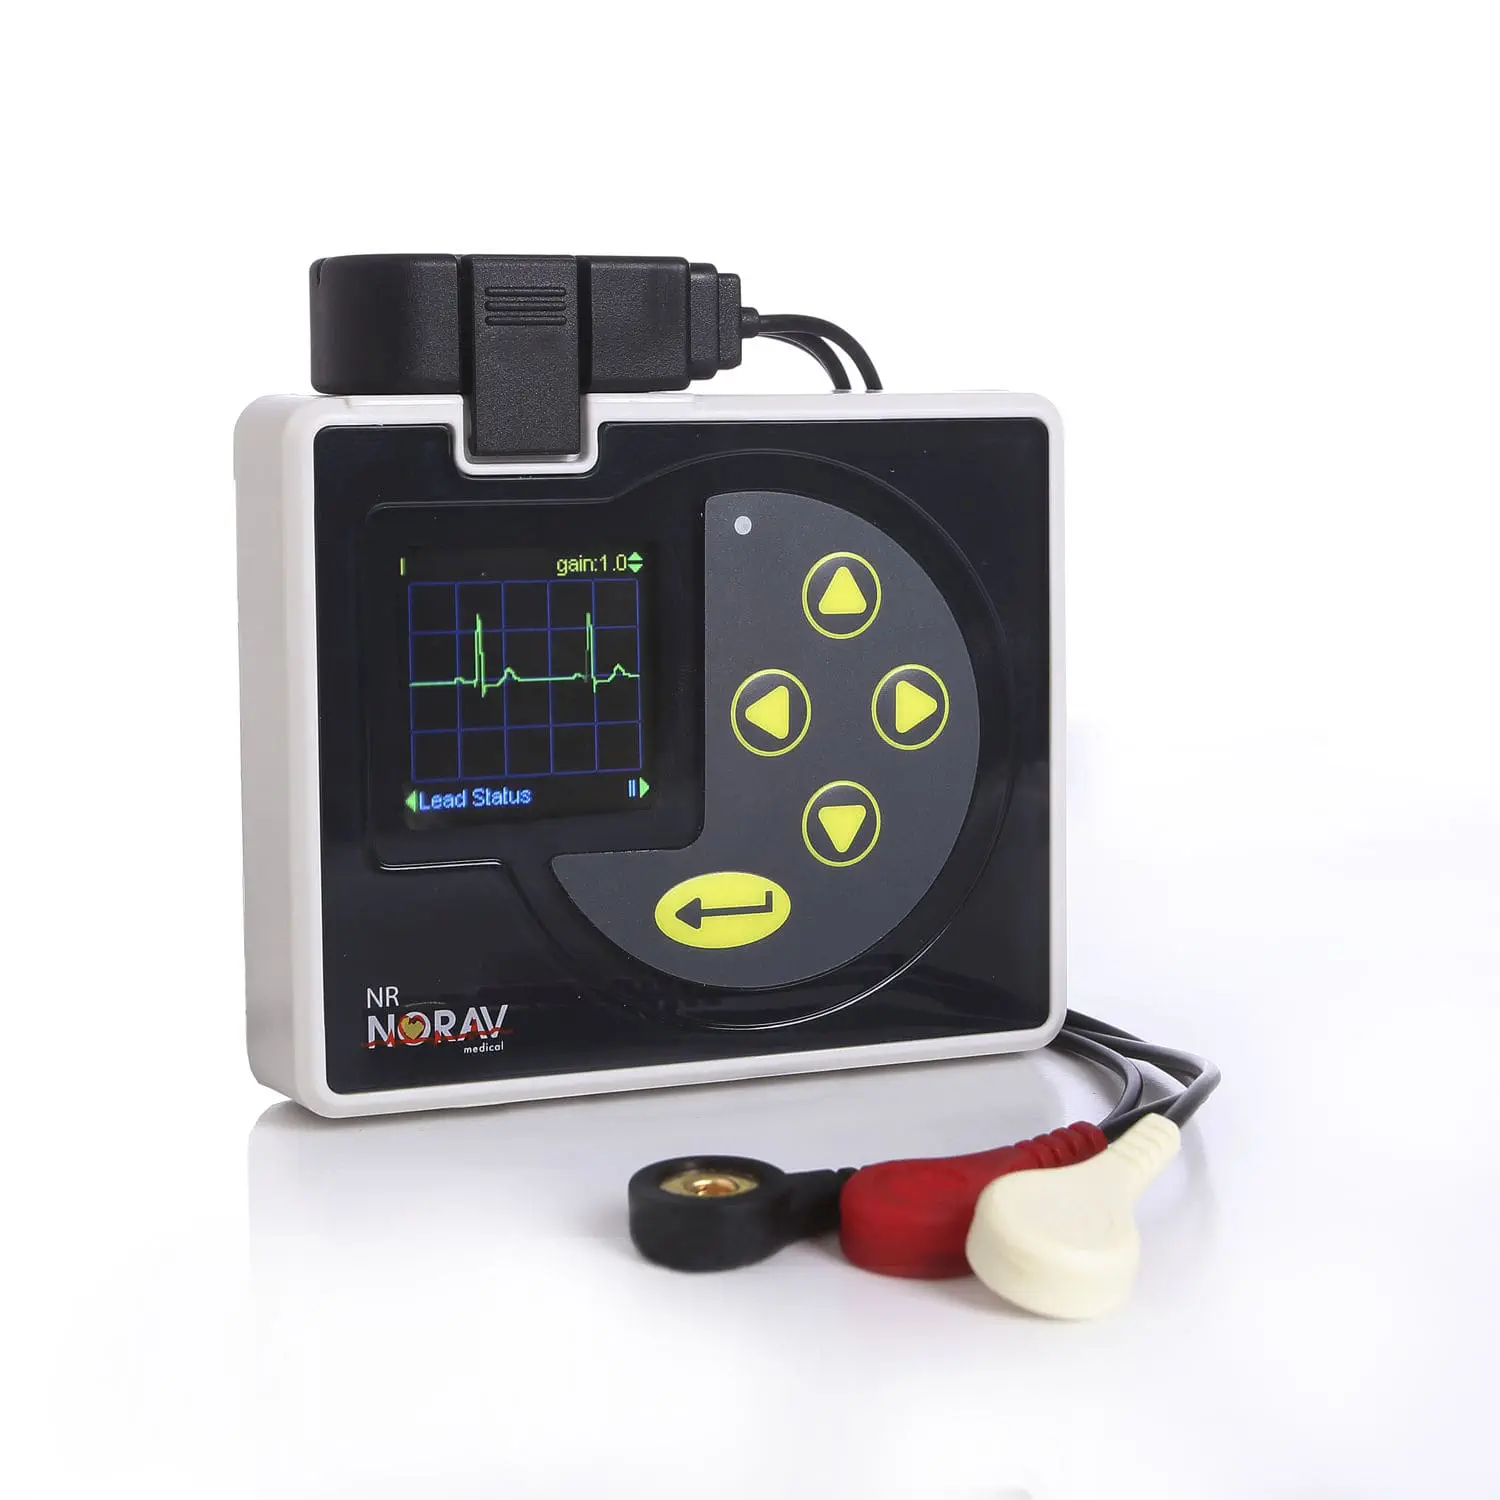 เครื่องตรวจติดตามการทำงานของหัวใจชนิดต่อเนื่องไม่น้อยกว่า 24 ชั่วโมง  3-channel Holter monitor NR-302  NORAV Medical